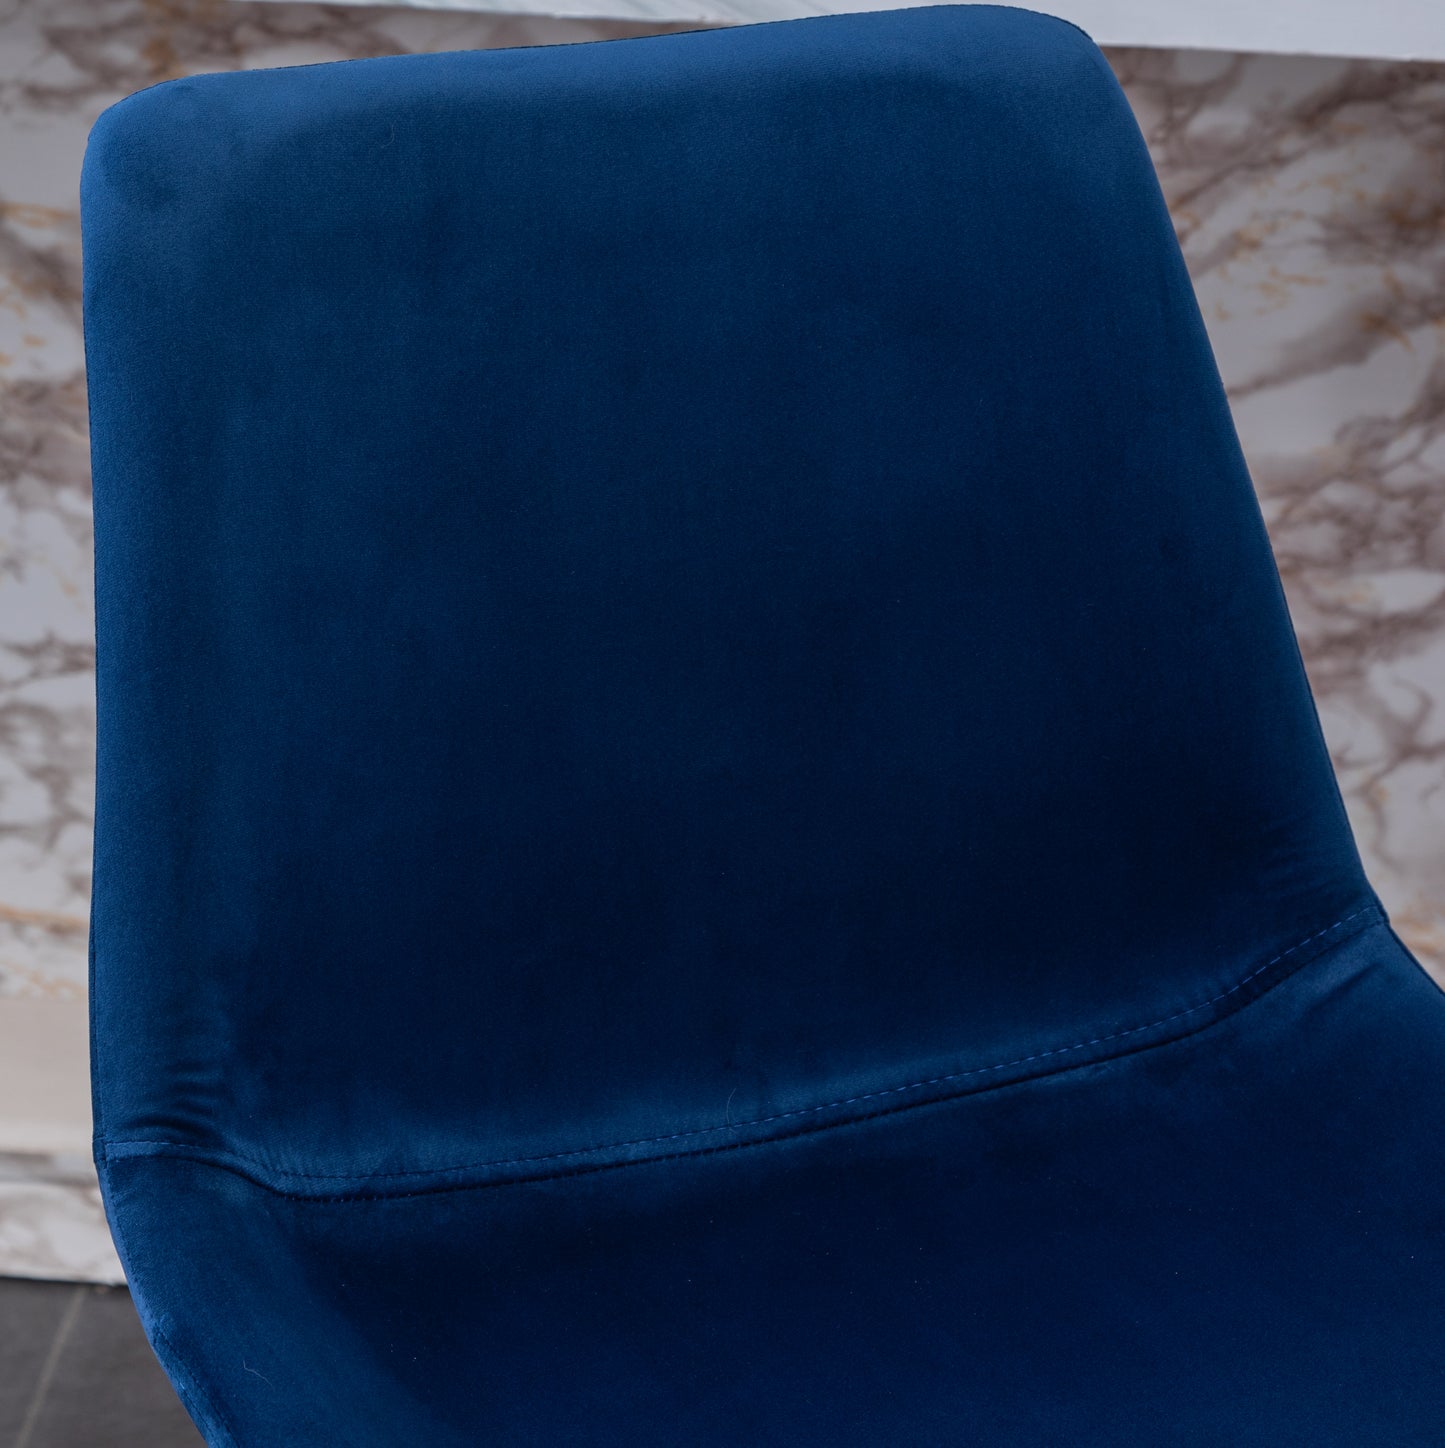 Roundhill Furniture Aufurr Modern Velvet 26.50 Counter Height Stool, Set of 2, Blue